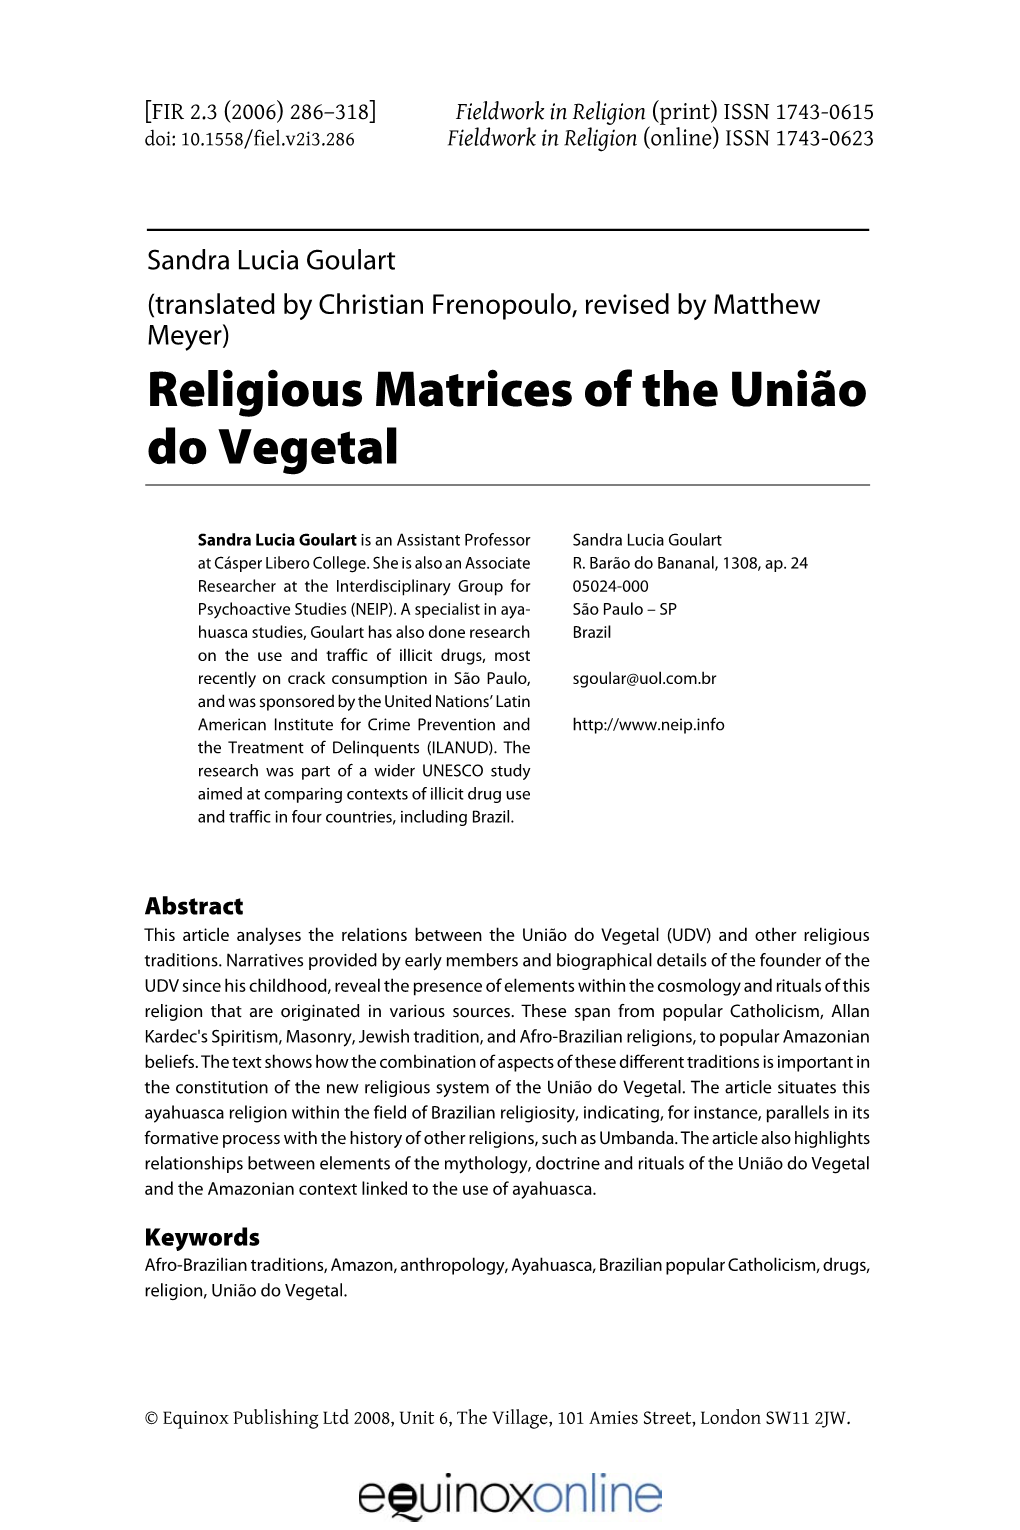 Religious Matrices of the União Do Vegetal